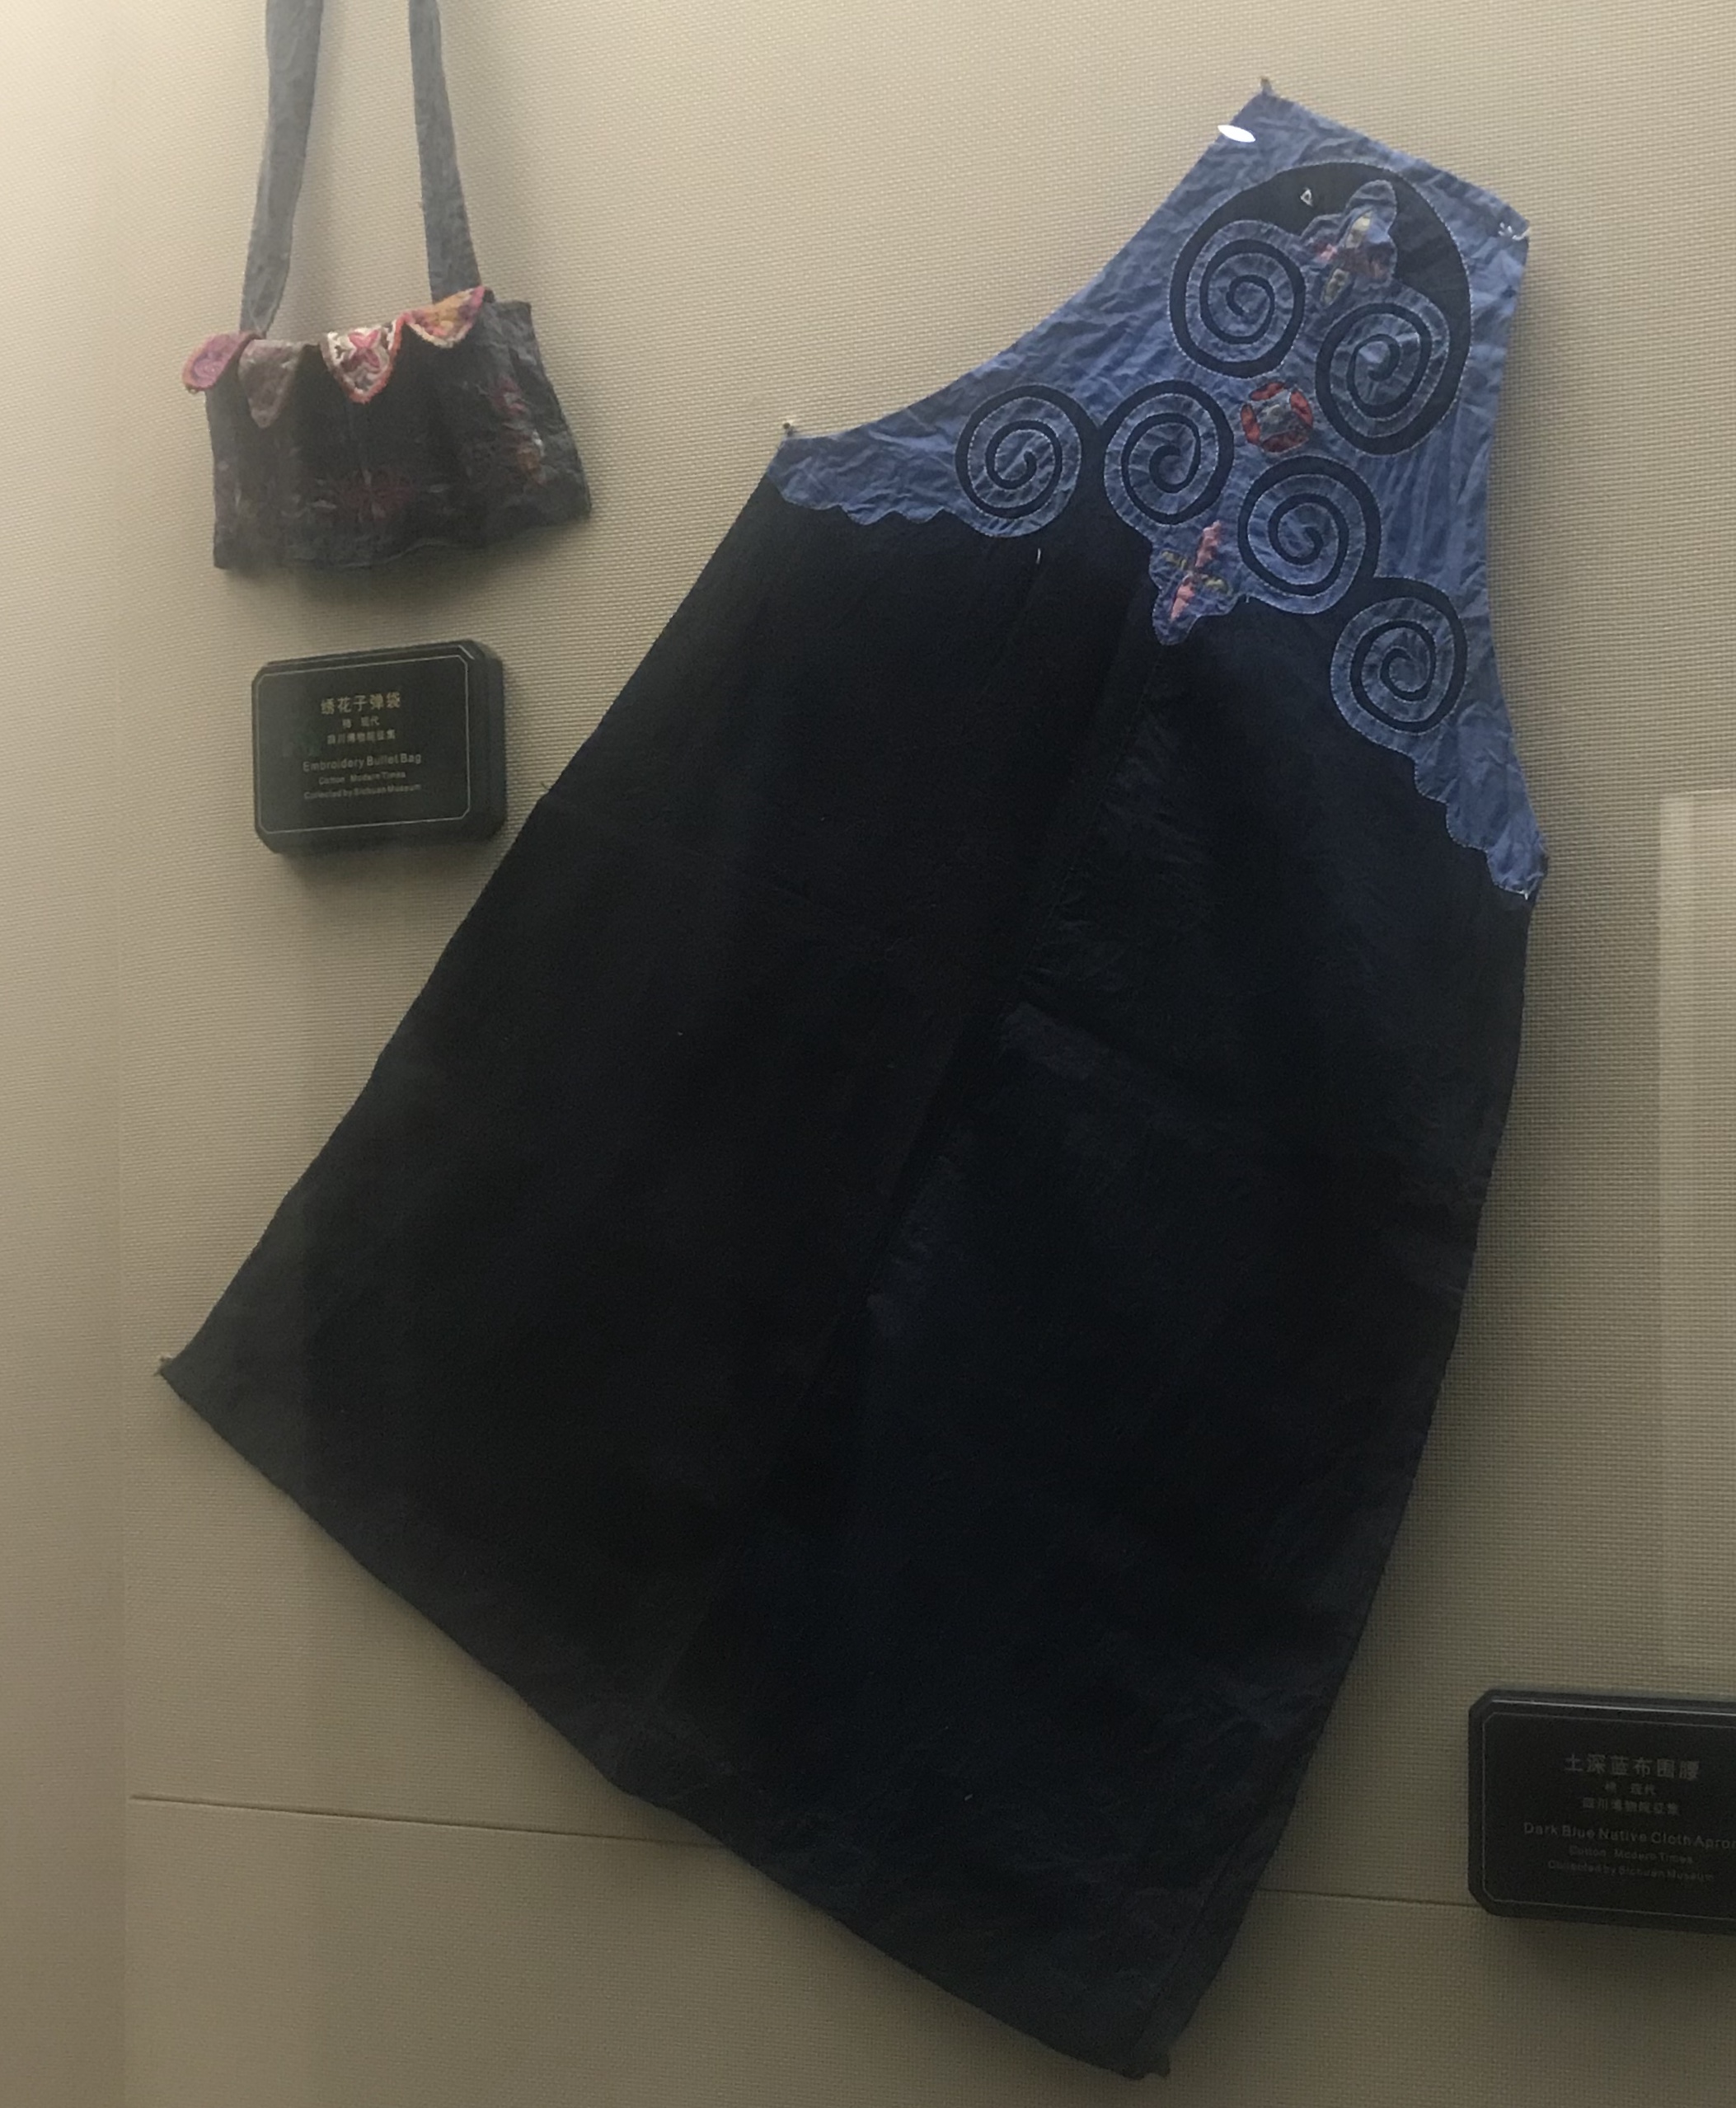 土深藍布ウエスト-チャン族衣装-四川民族文物館-四川博物館-成都